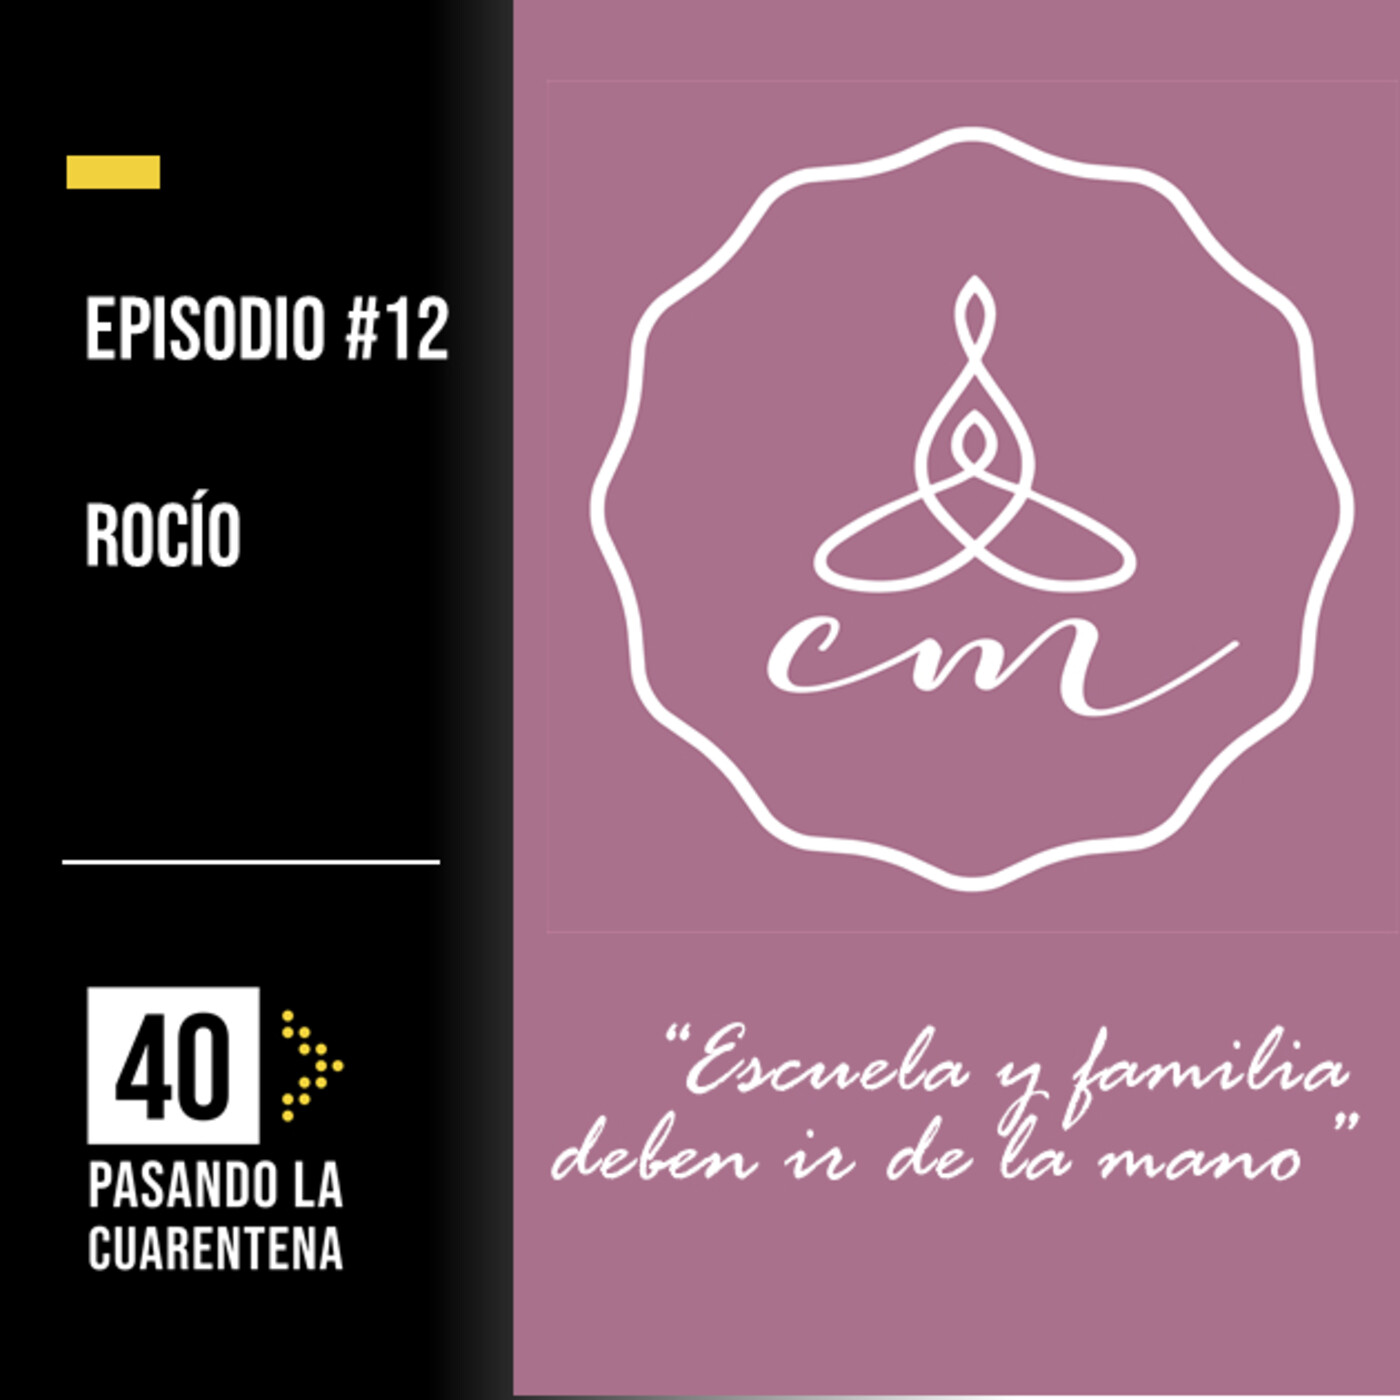 #12 Rocío: "Escuela y familia deben ir de la mano"